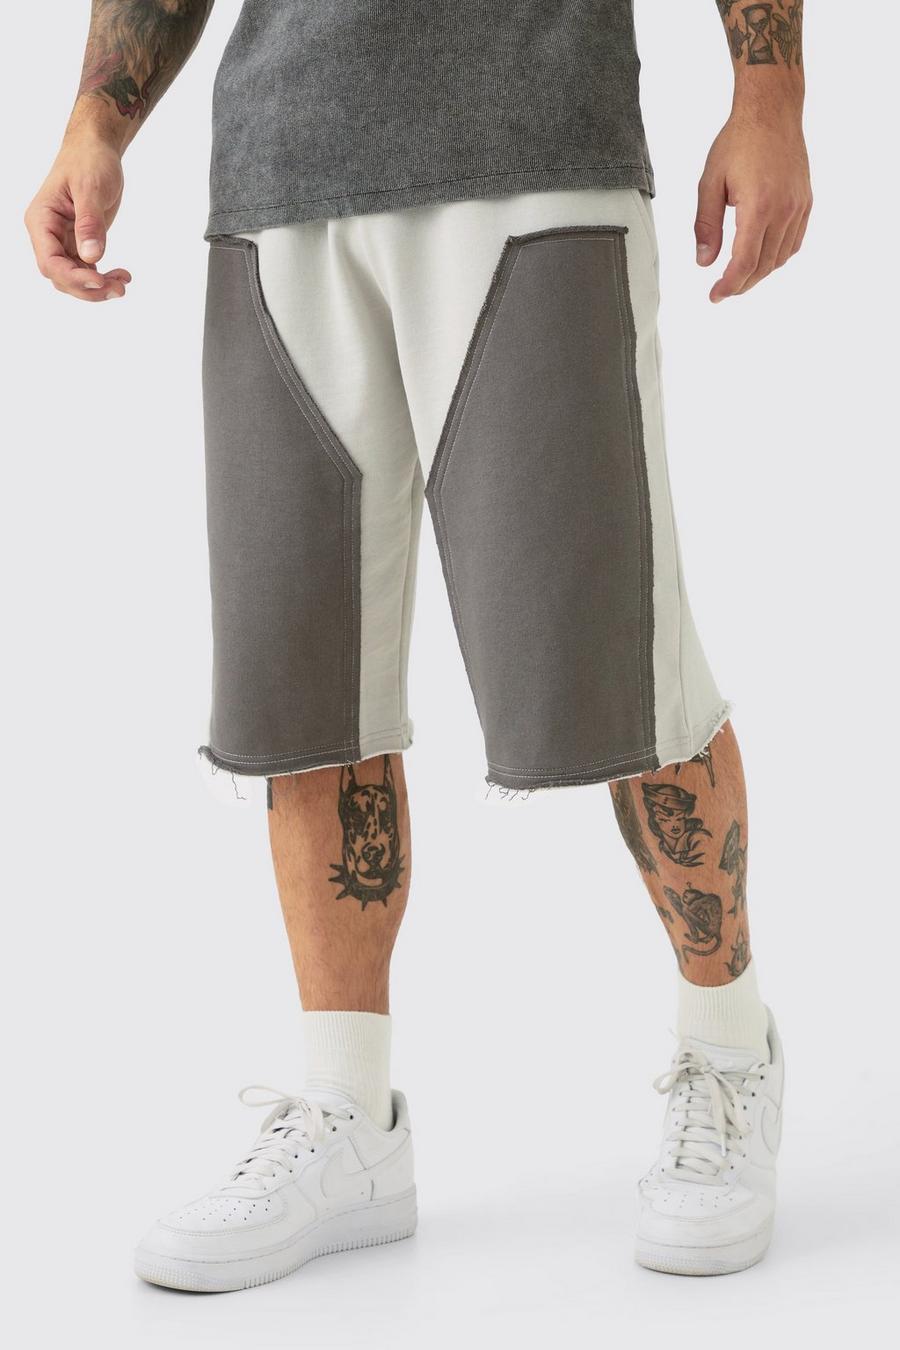 Pantalón corto holgado con aplique, paneles Carpenter y filos deshilachados, Grey